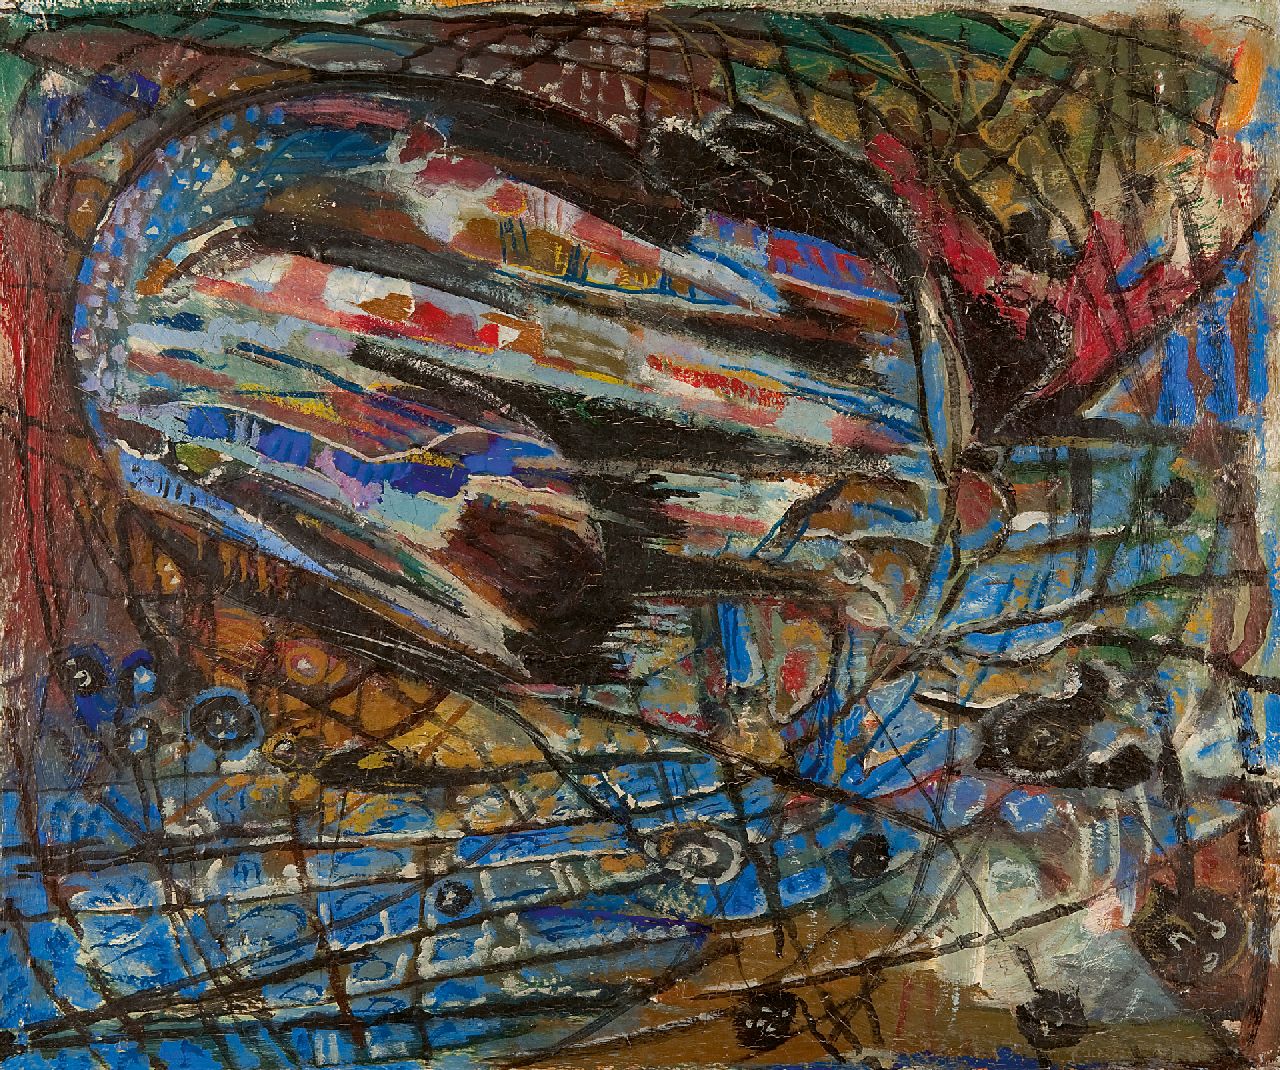 Klaas Boonstra | Schilderij no. 123, olieverf op schildersboard, 50,1 x 60,0 cm, gesigneerd verso